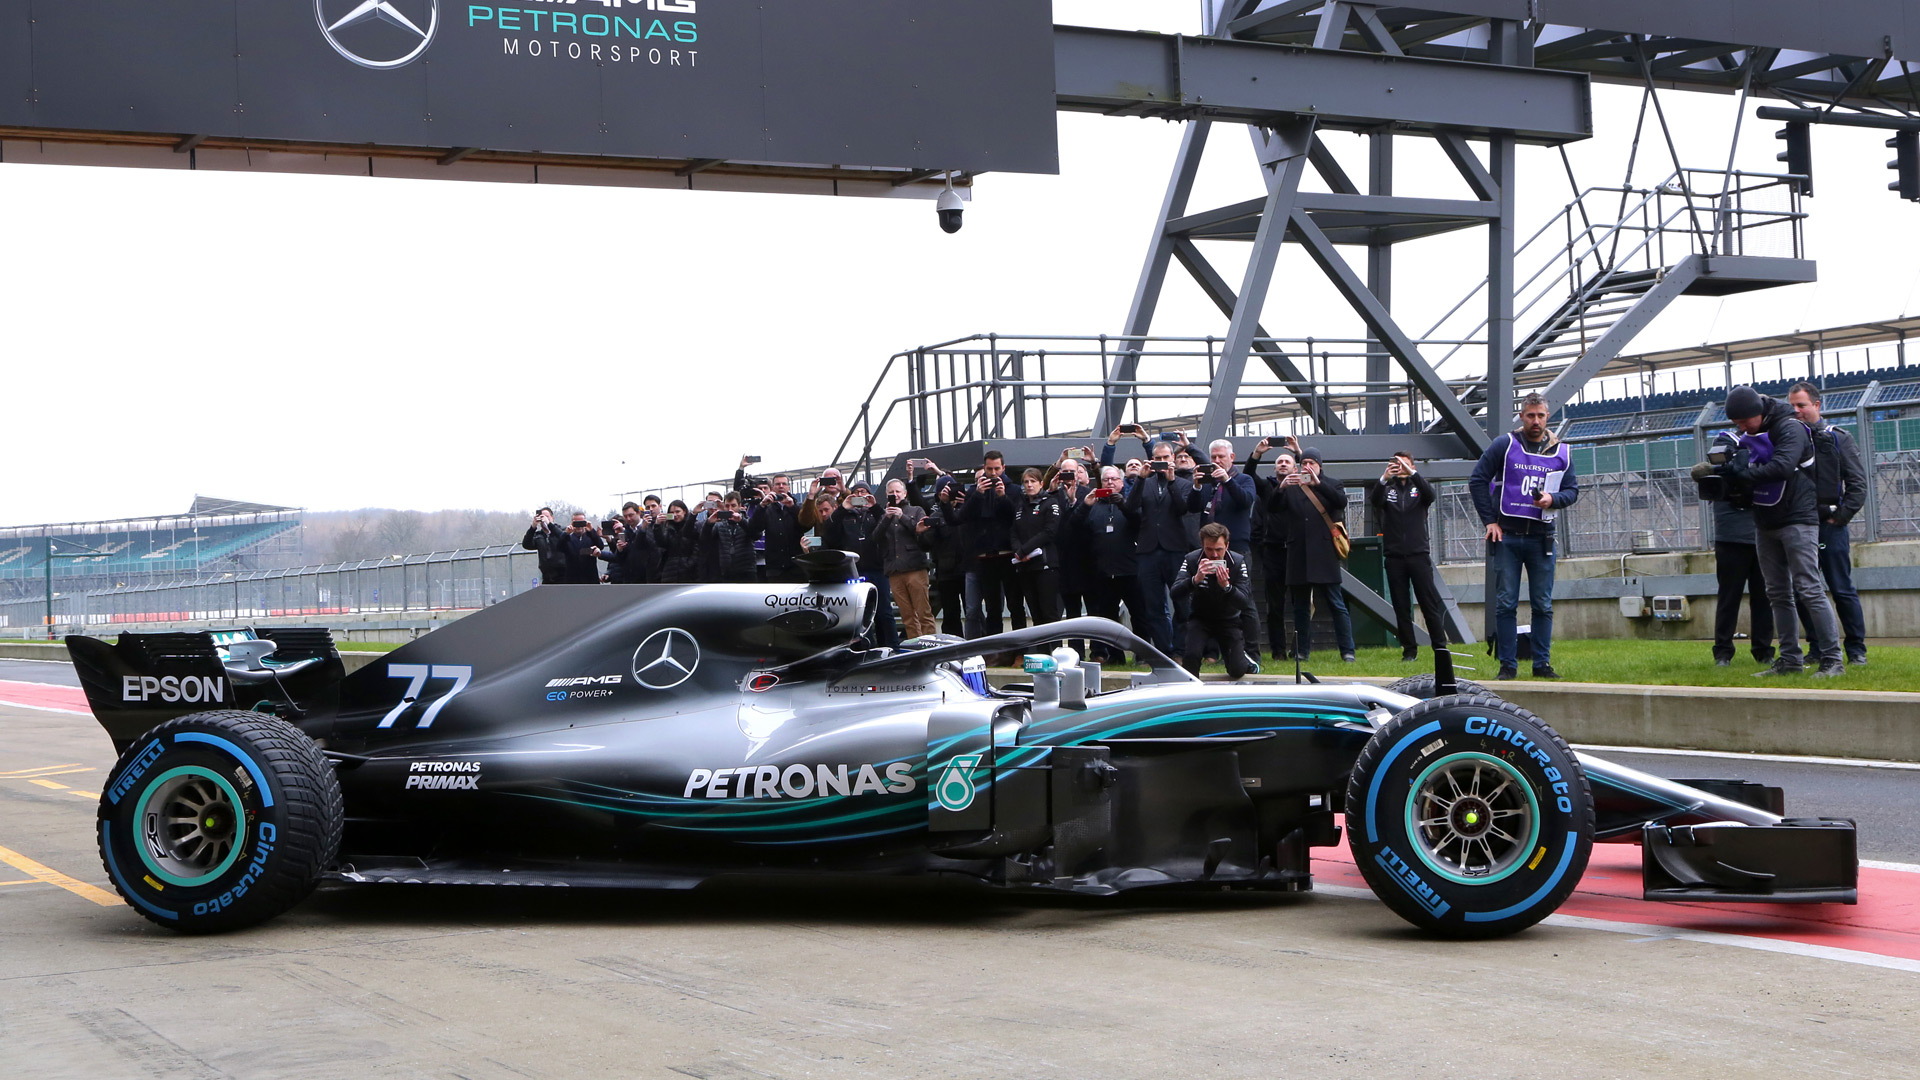 2018 Mercedes-AMG W09 EQ Power+ Formula 1 race car